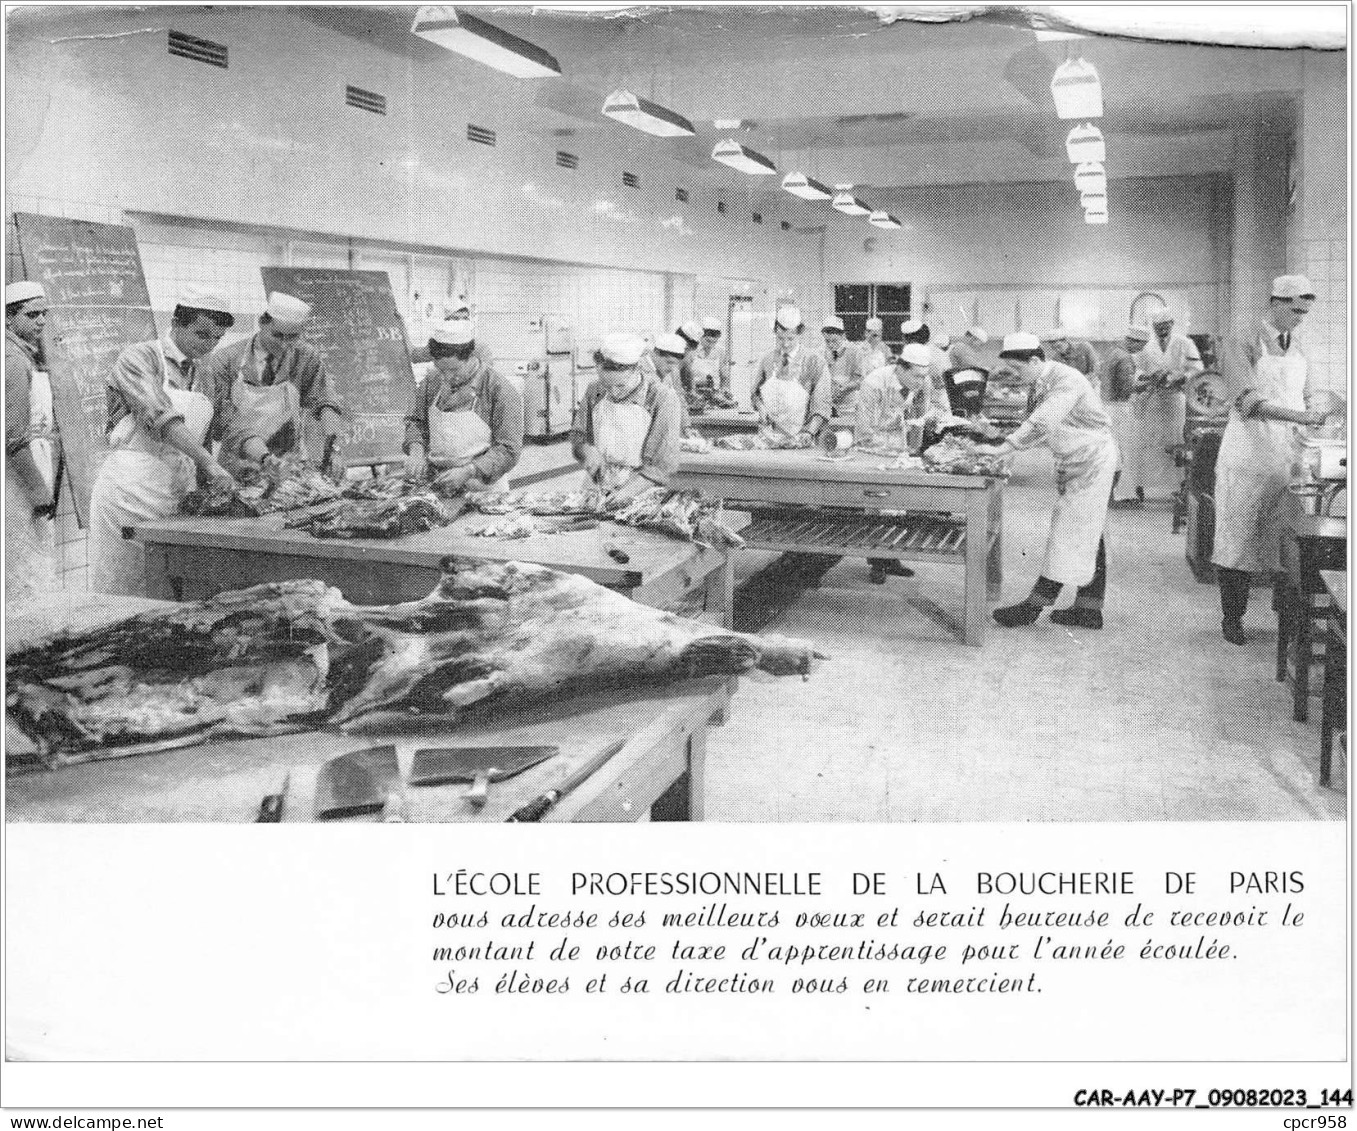 CAR-AAYP7-75-0530 - L'ECOLE PROFESSIONNELLE DE LA BOUCHERIE DE PARIS - Education, Schools And Universities